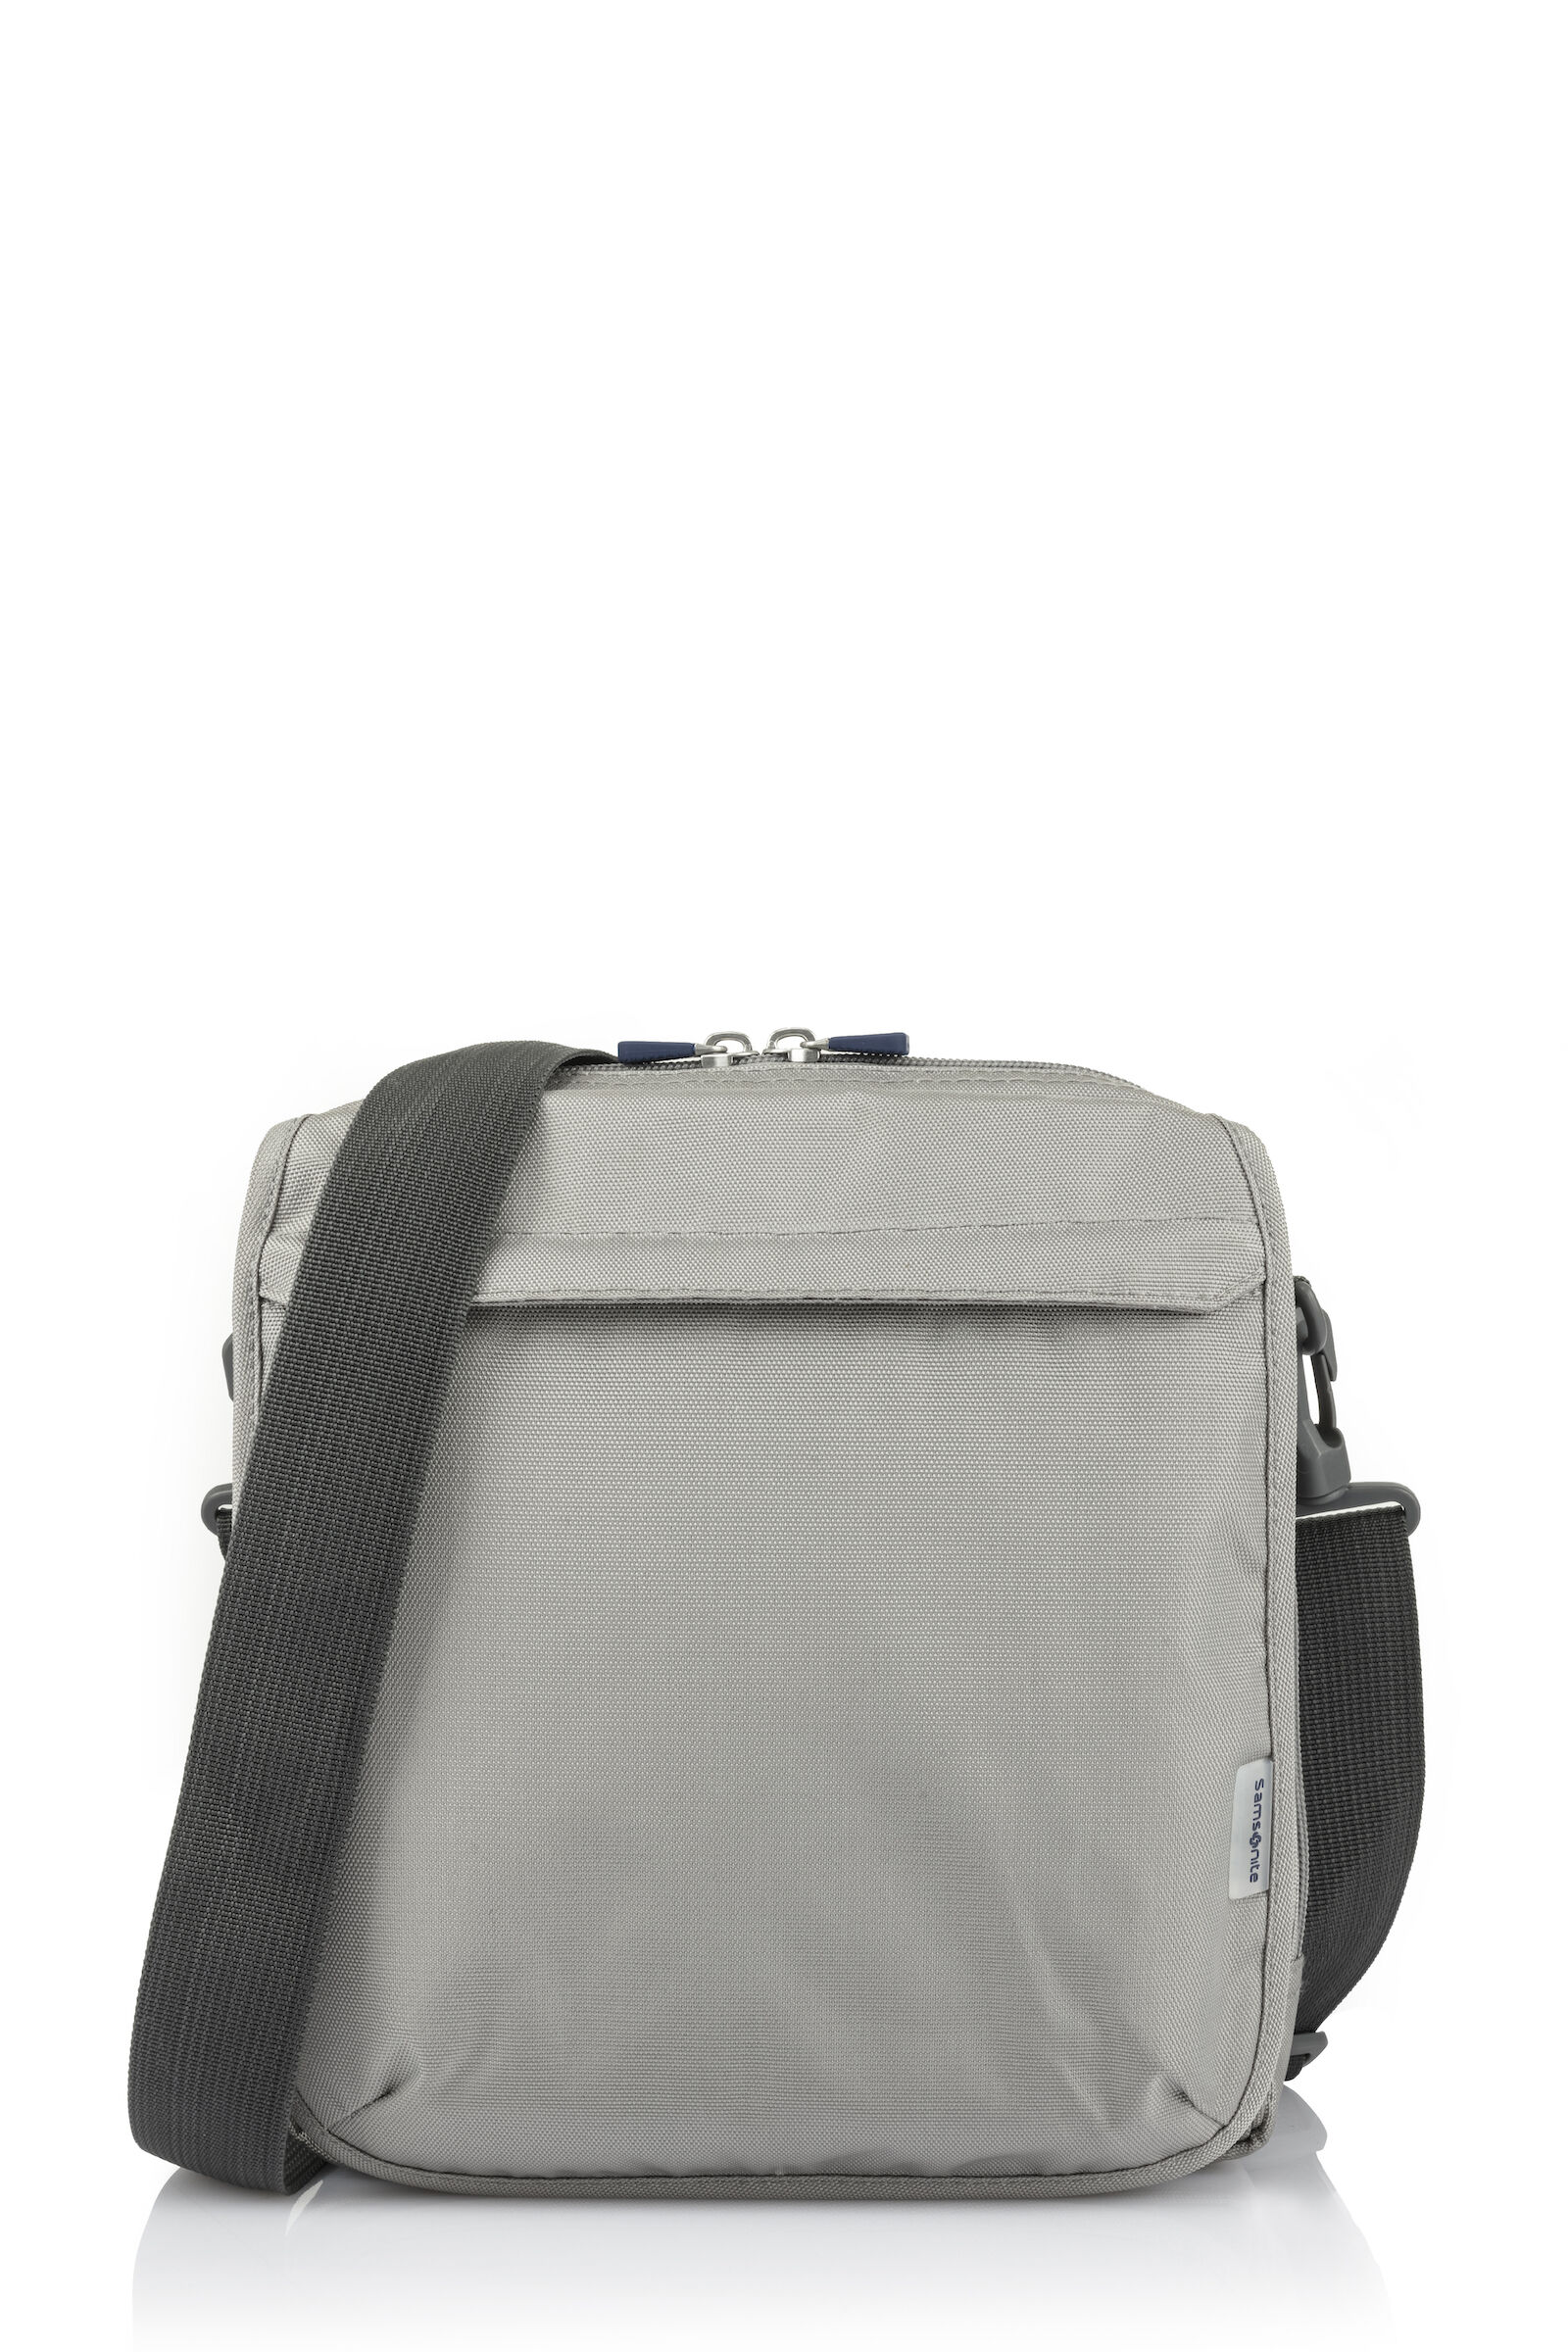 Travel bag SAMSONITE Black in Synthetic - 18138976